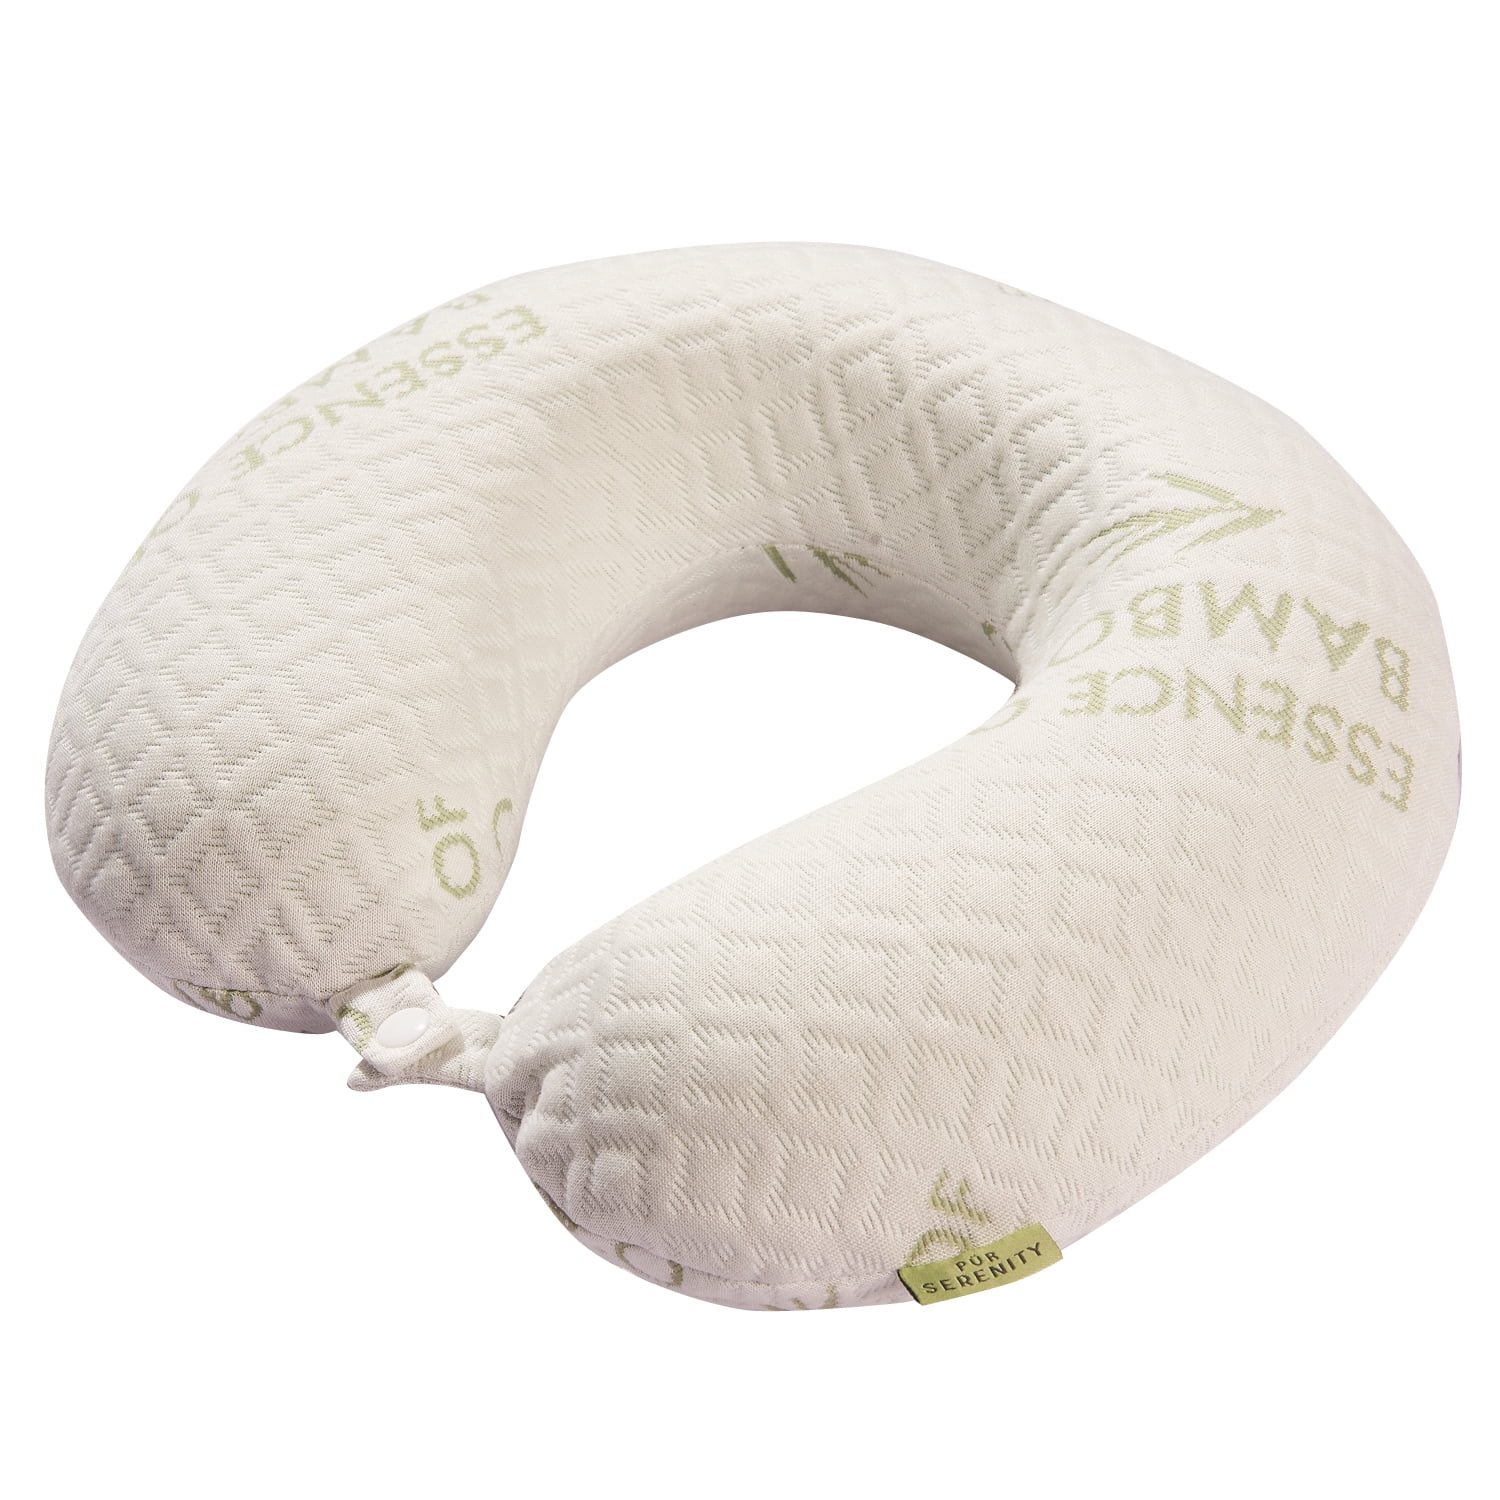 regal comfort bamboo pillow